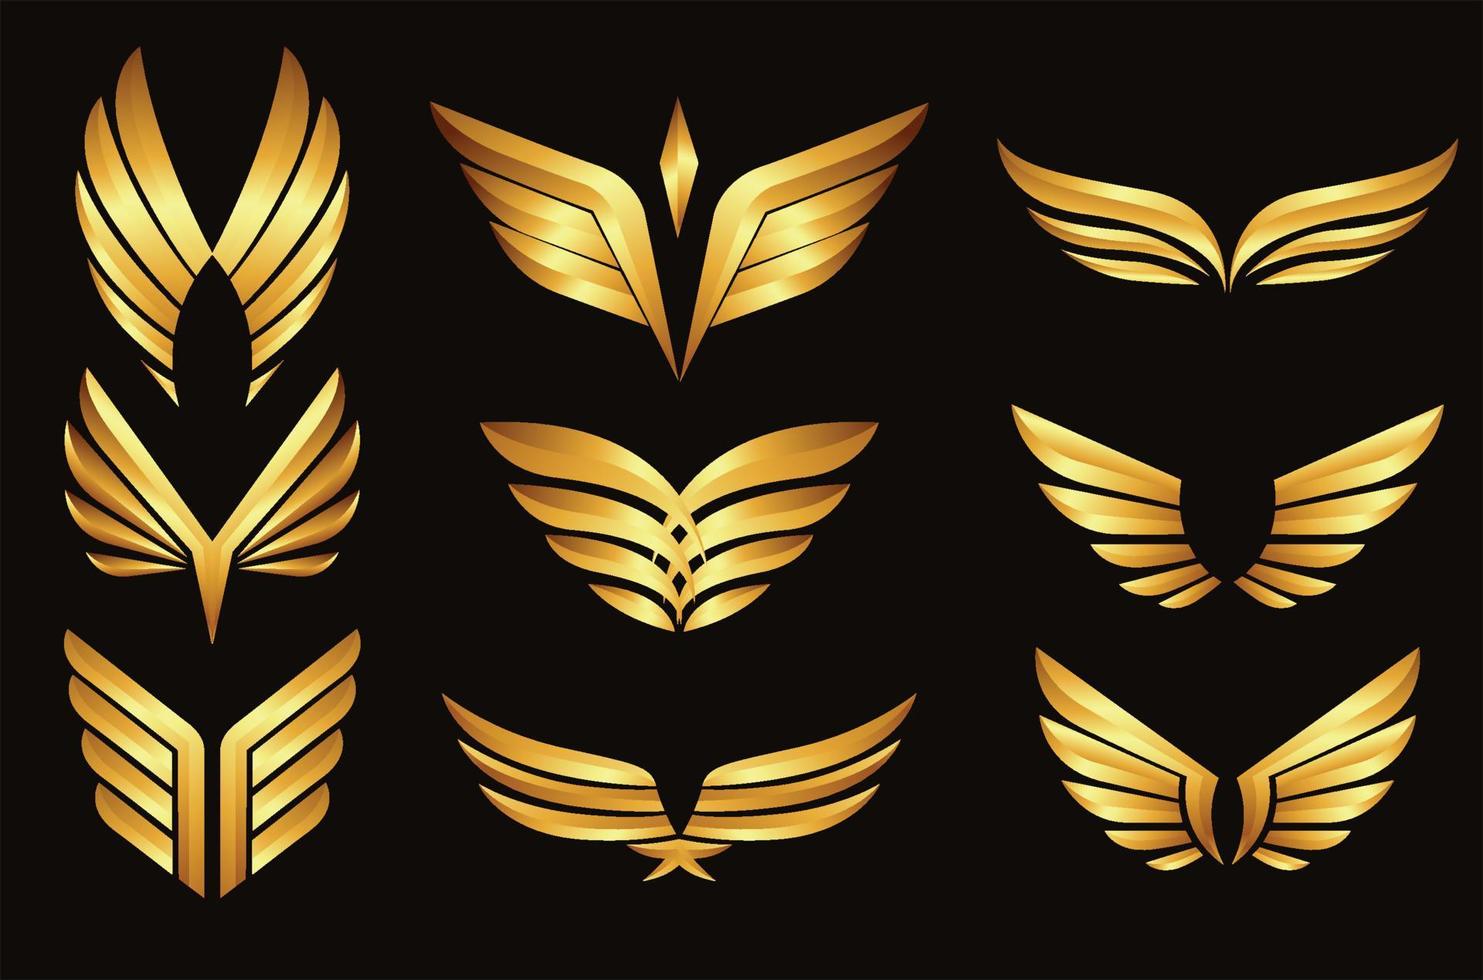 Metallic Golden Wings vector